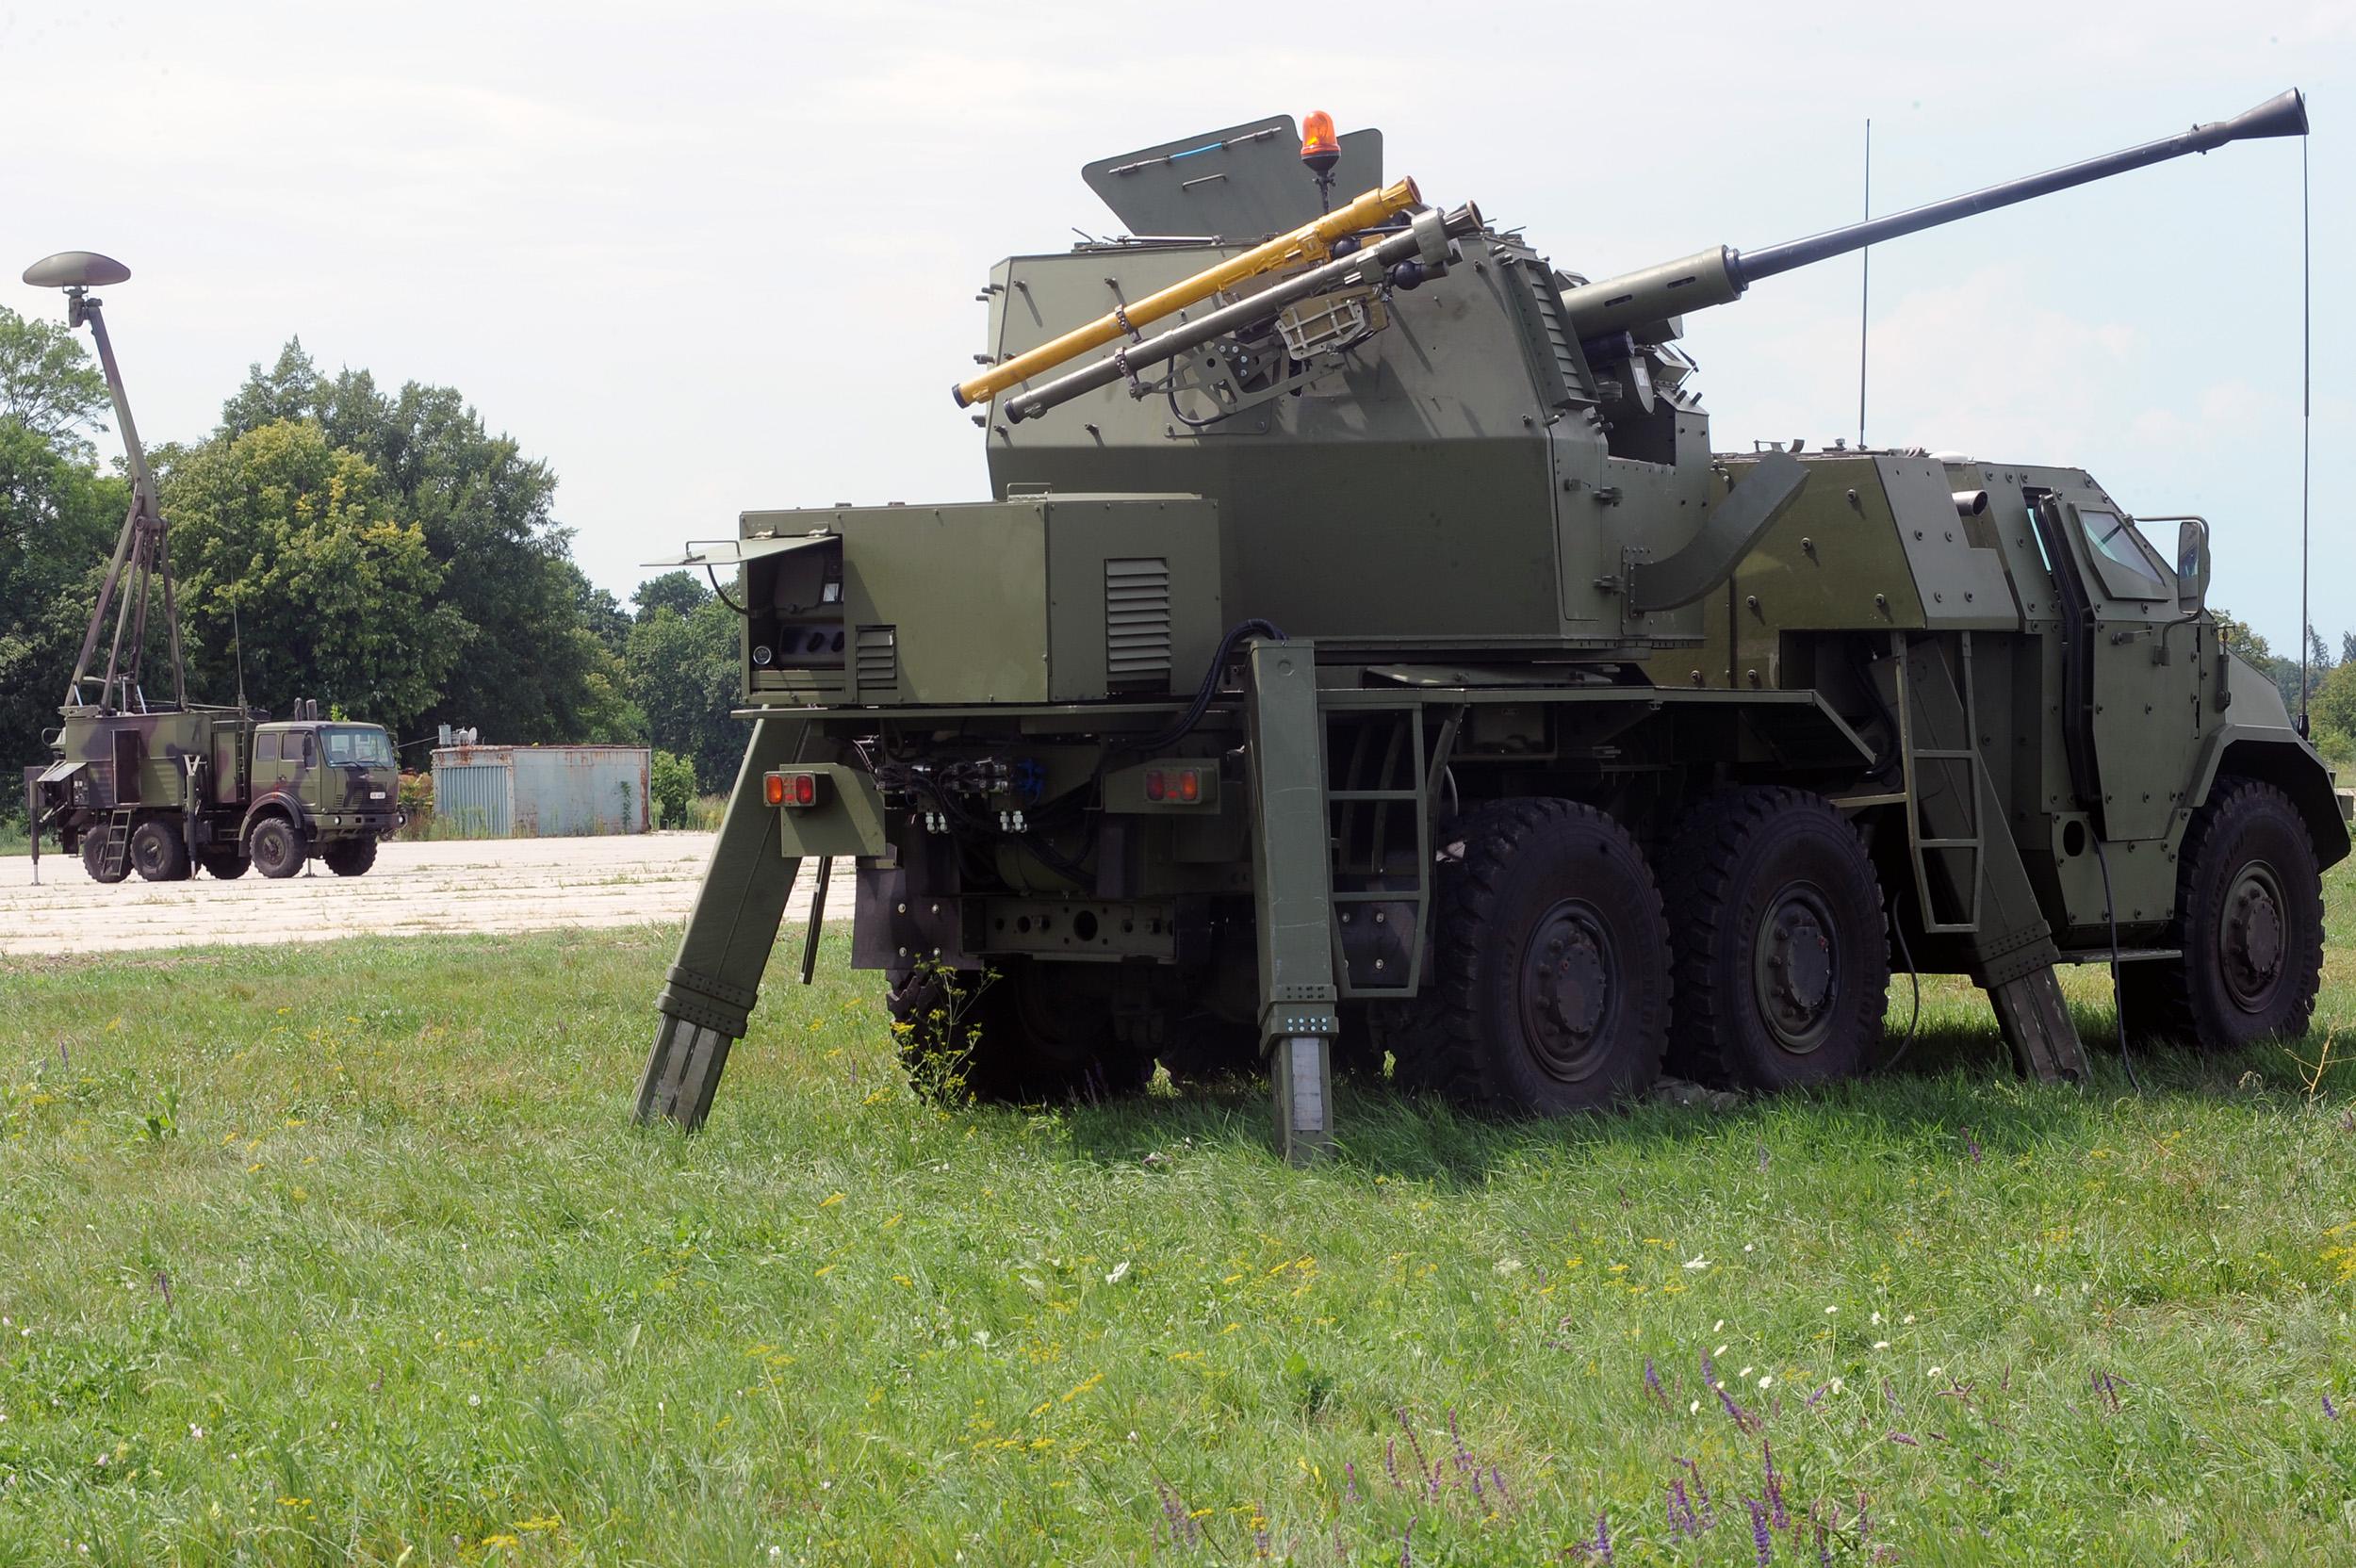 Serbia Tests PASARS 40mm Self-Propelled Anti-Aircraft Gun